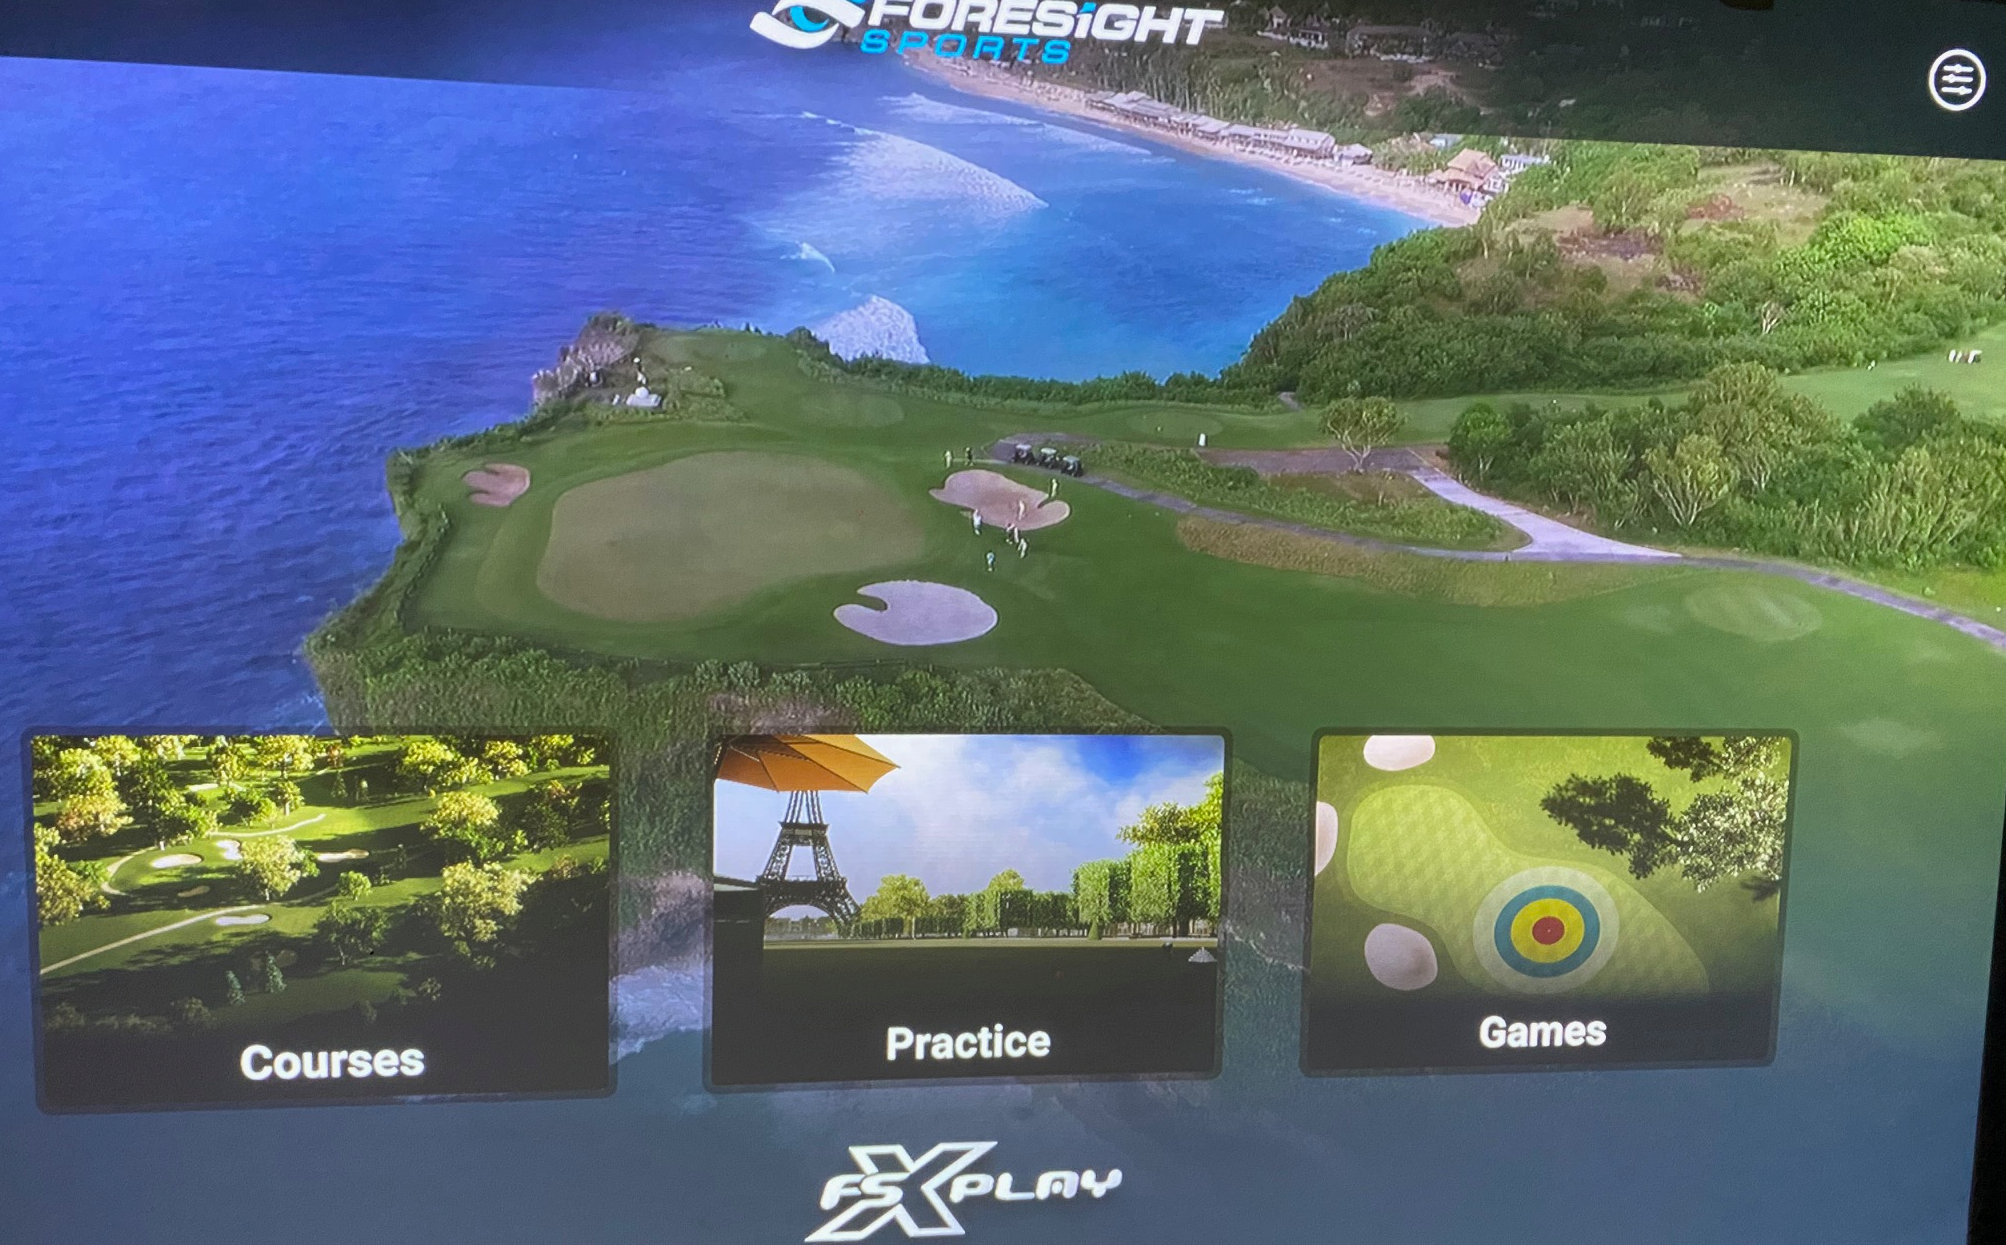 Tournery Golf Centre Simulator